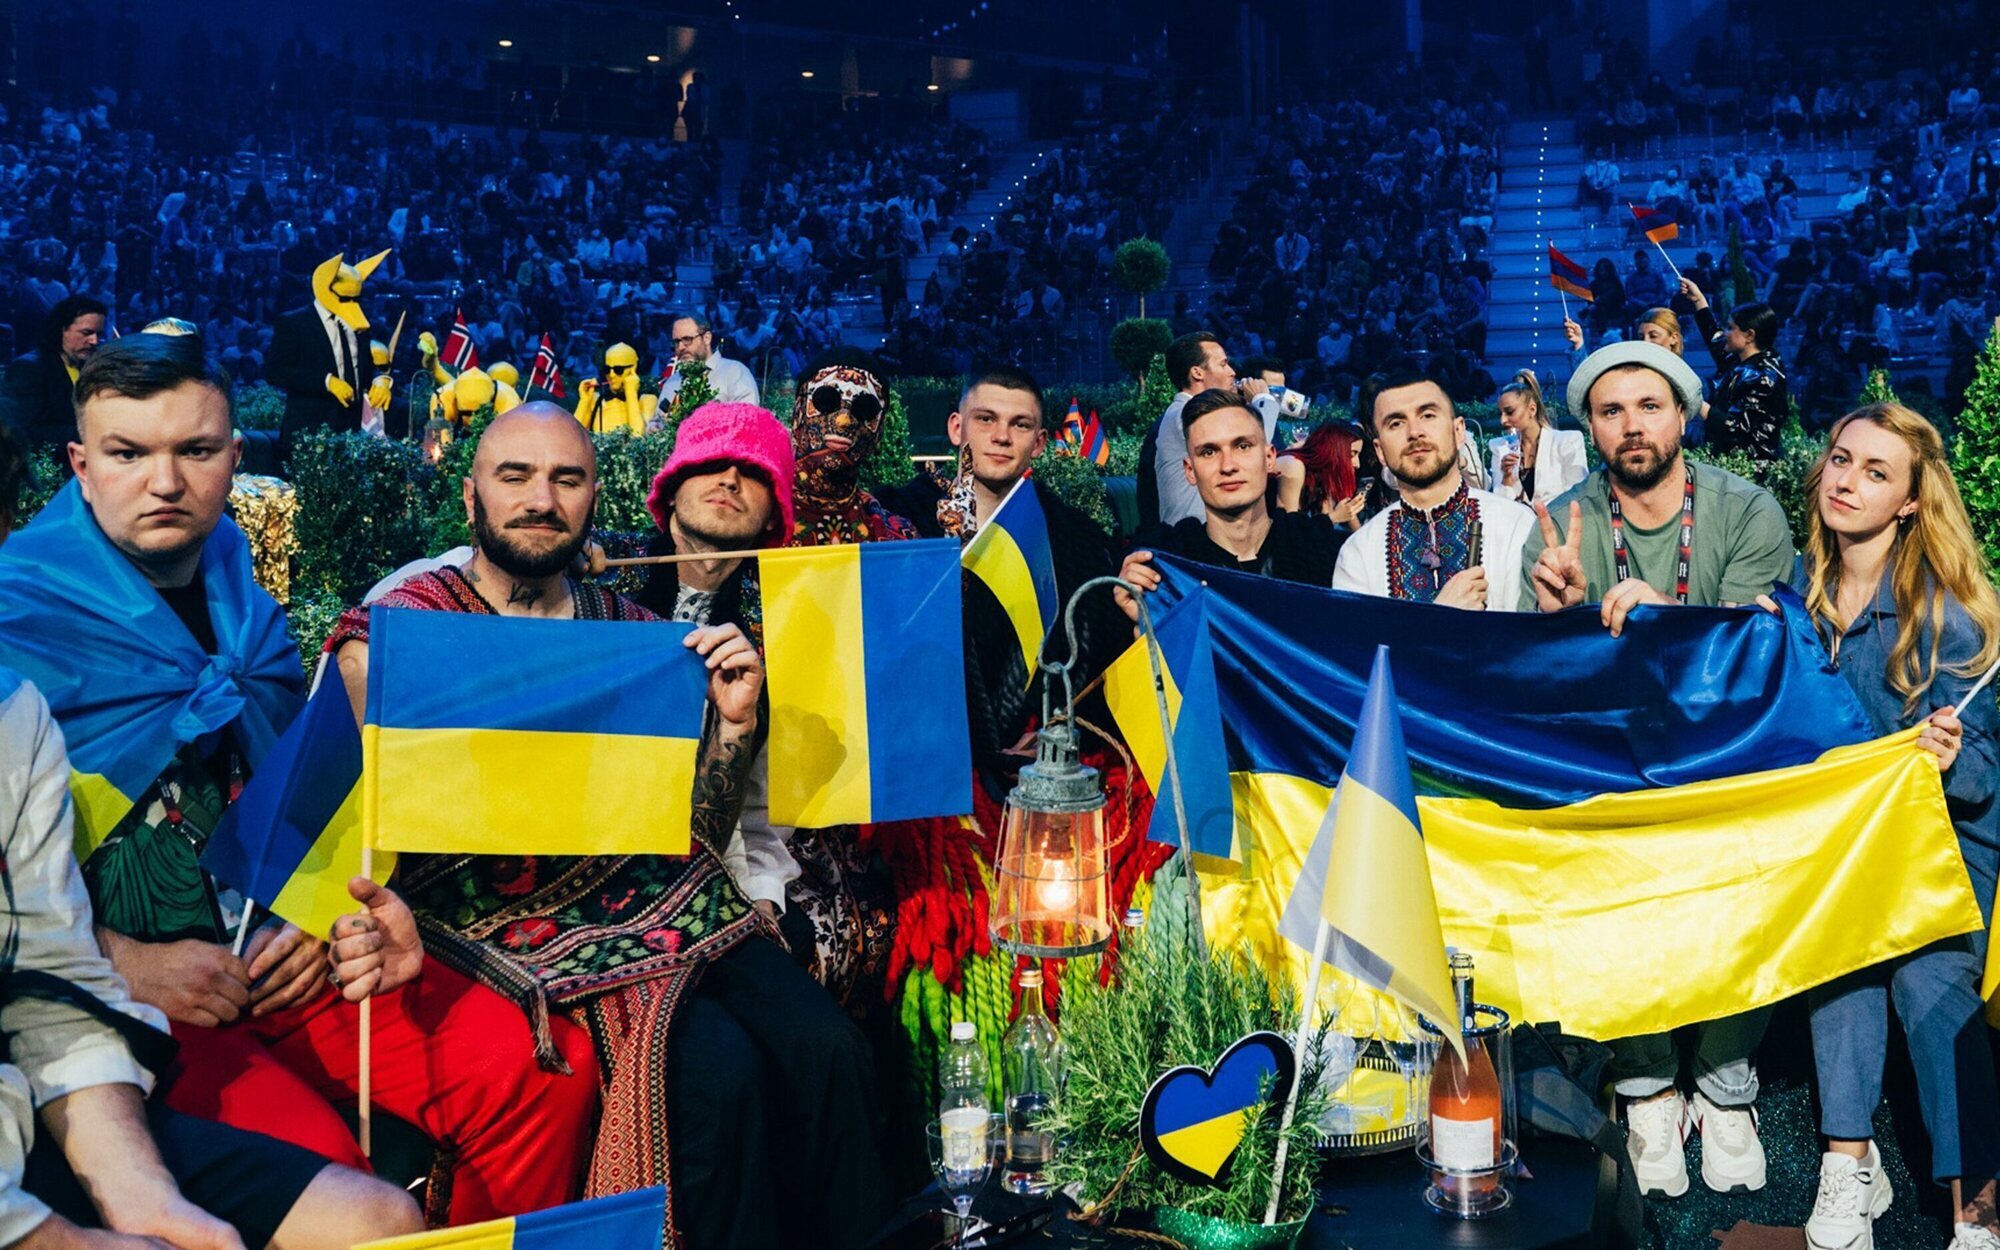 El importante mensaje de Systur en Eurovisión 2022: "No permitamos que se normalice la guerra en Ucrania"